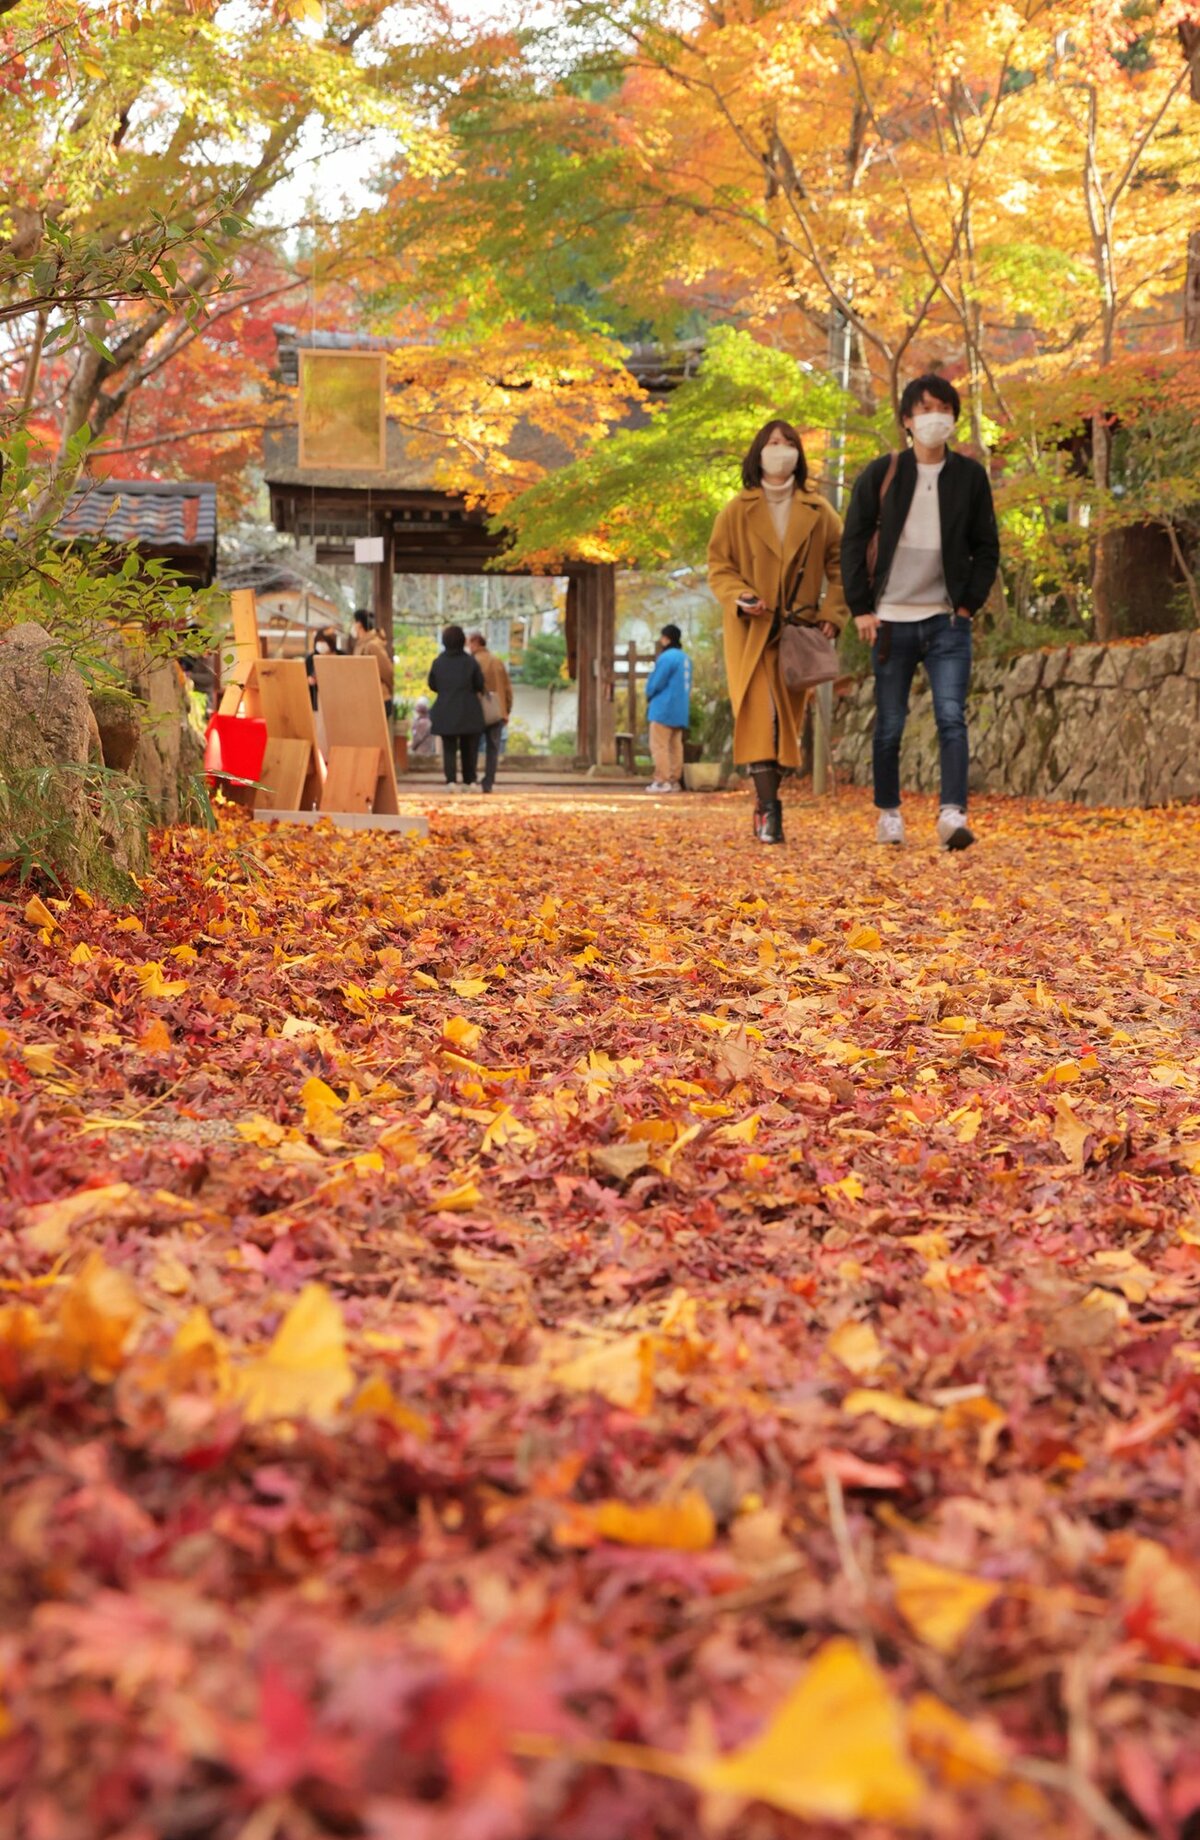 オレンジ色のじゅうたん、紅葉の見ごろも終盤に　滋賀・湖南三山